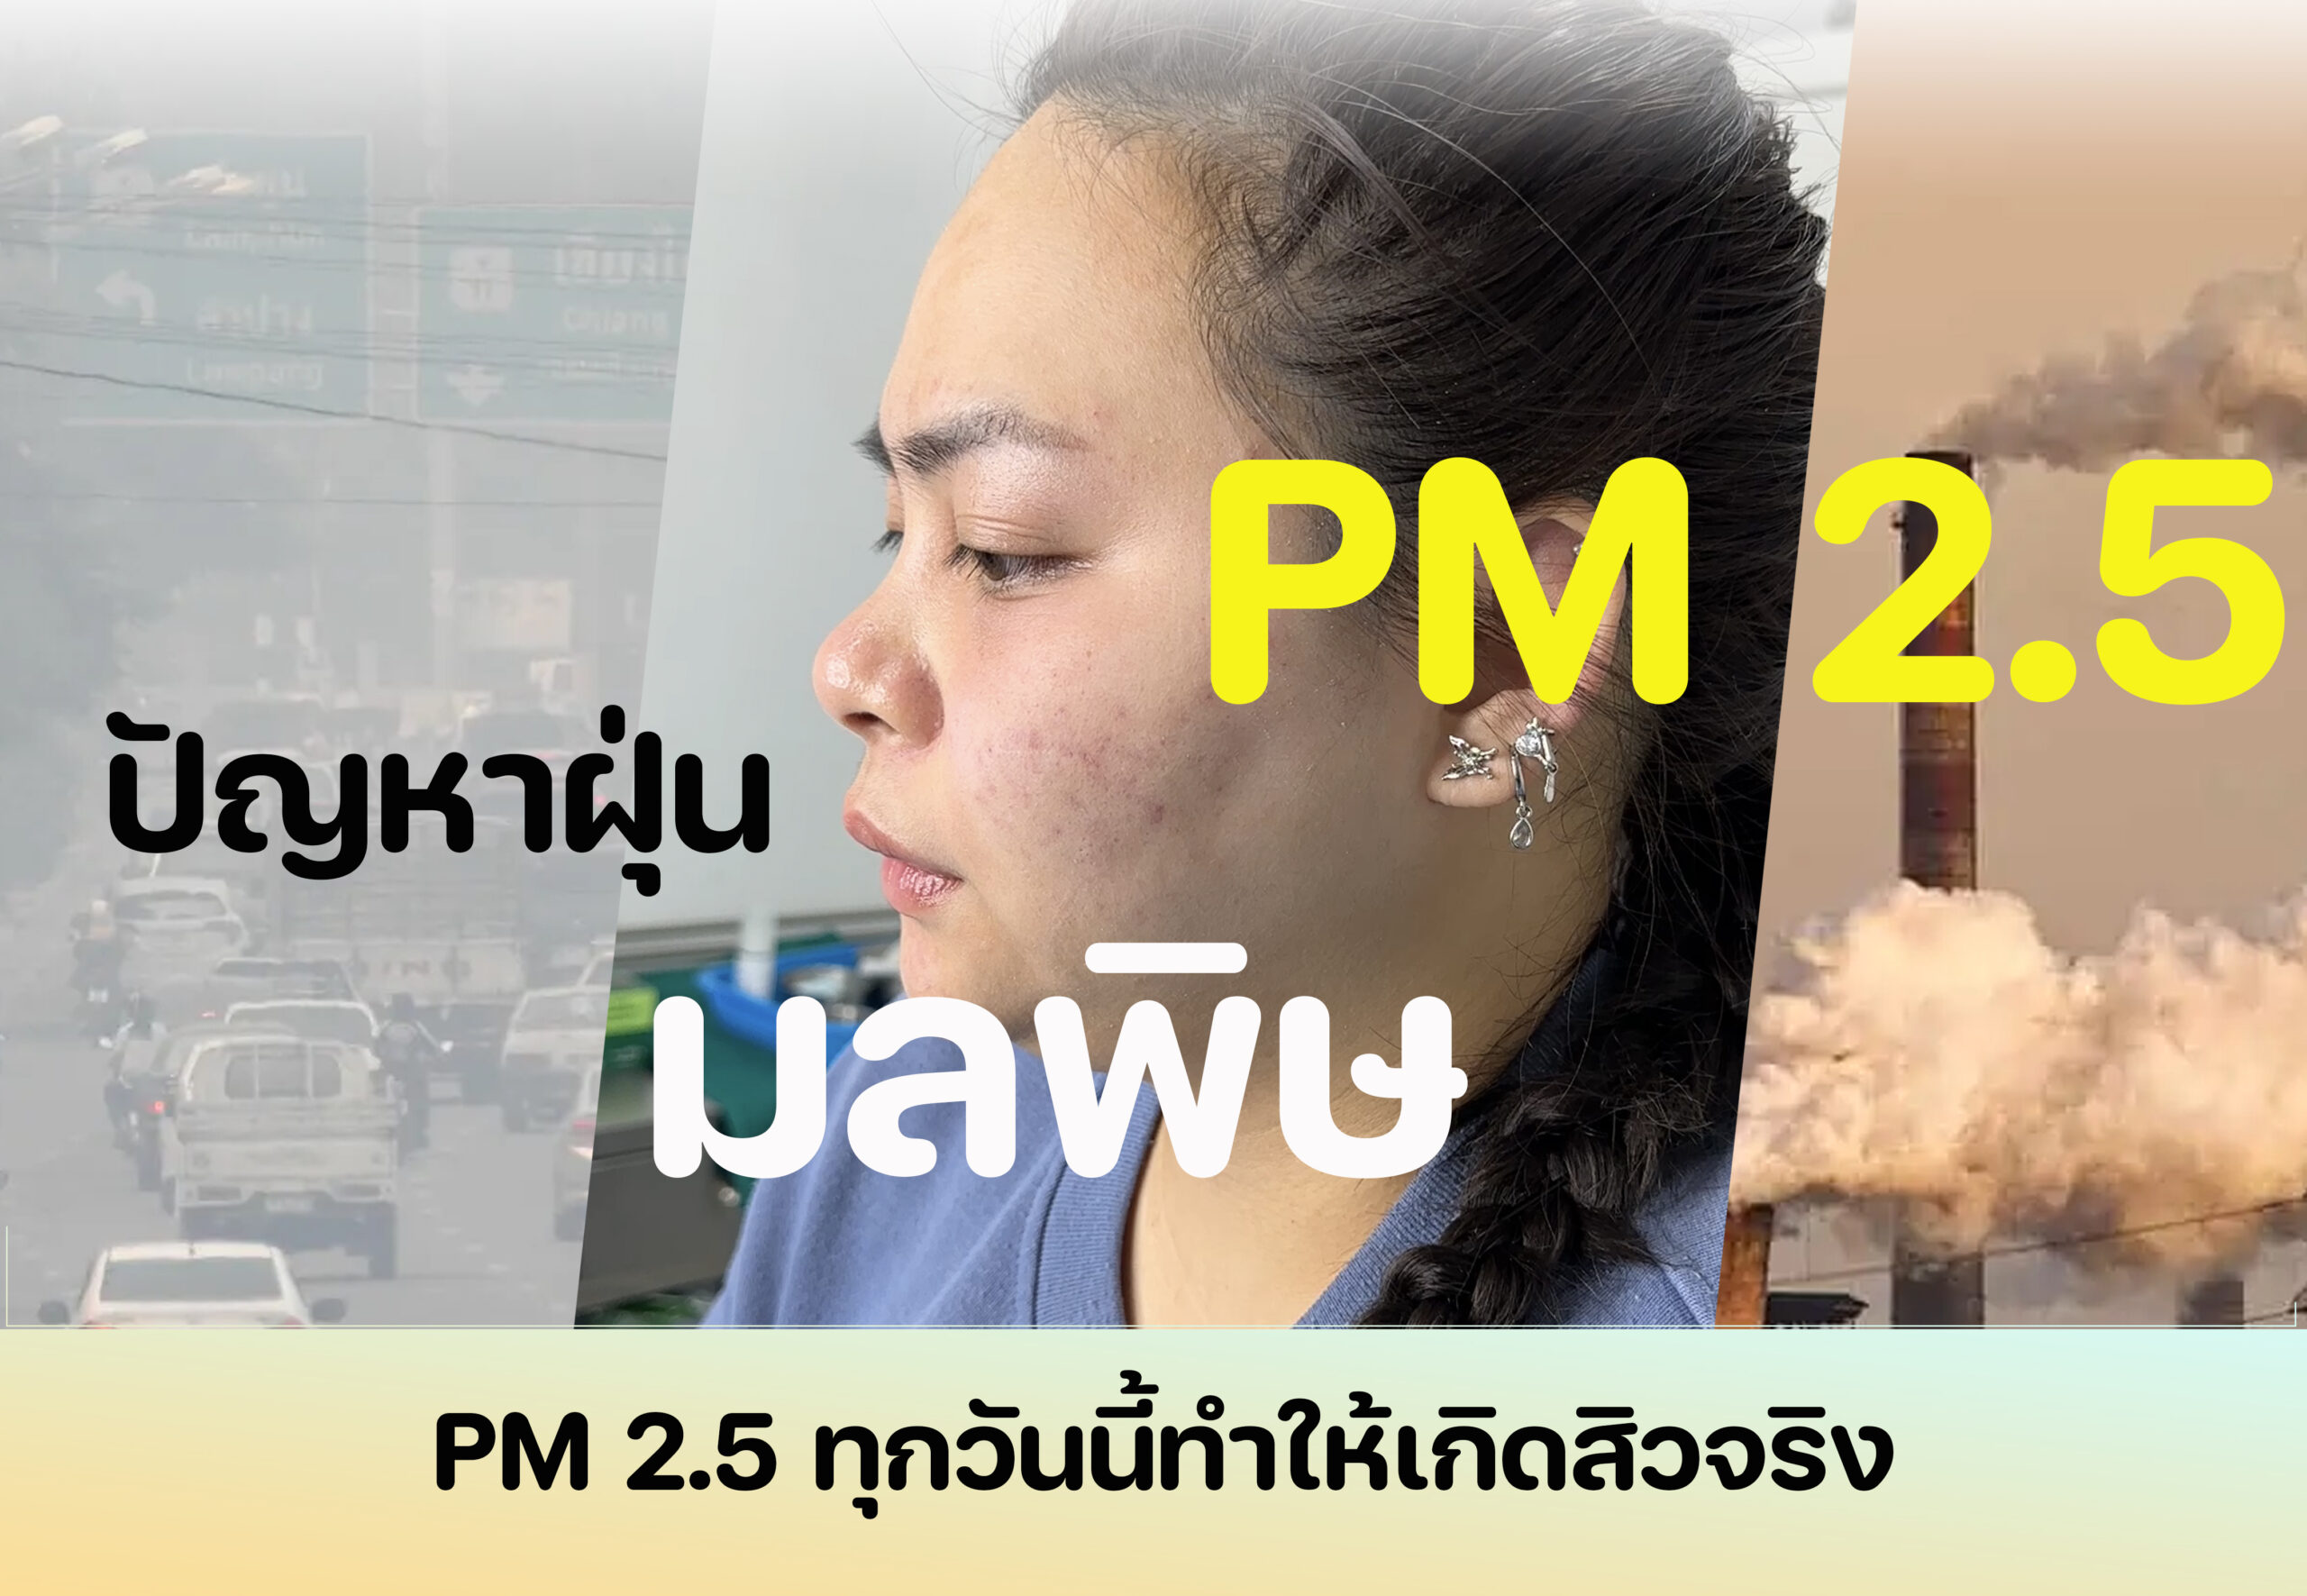 PM 2.5 เป็นสิ่งที่เลี่ยงไม่ได้ในปัจจุบัน ทำให้เคสเป็นสิวมากขึ้นเรื่อยๆ แม้พ้นวัยรุ่นแล้วก็ตามหรือไม่